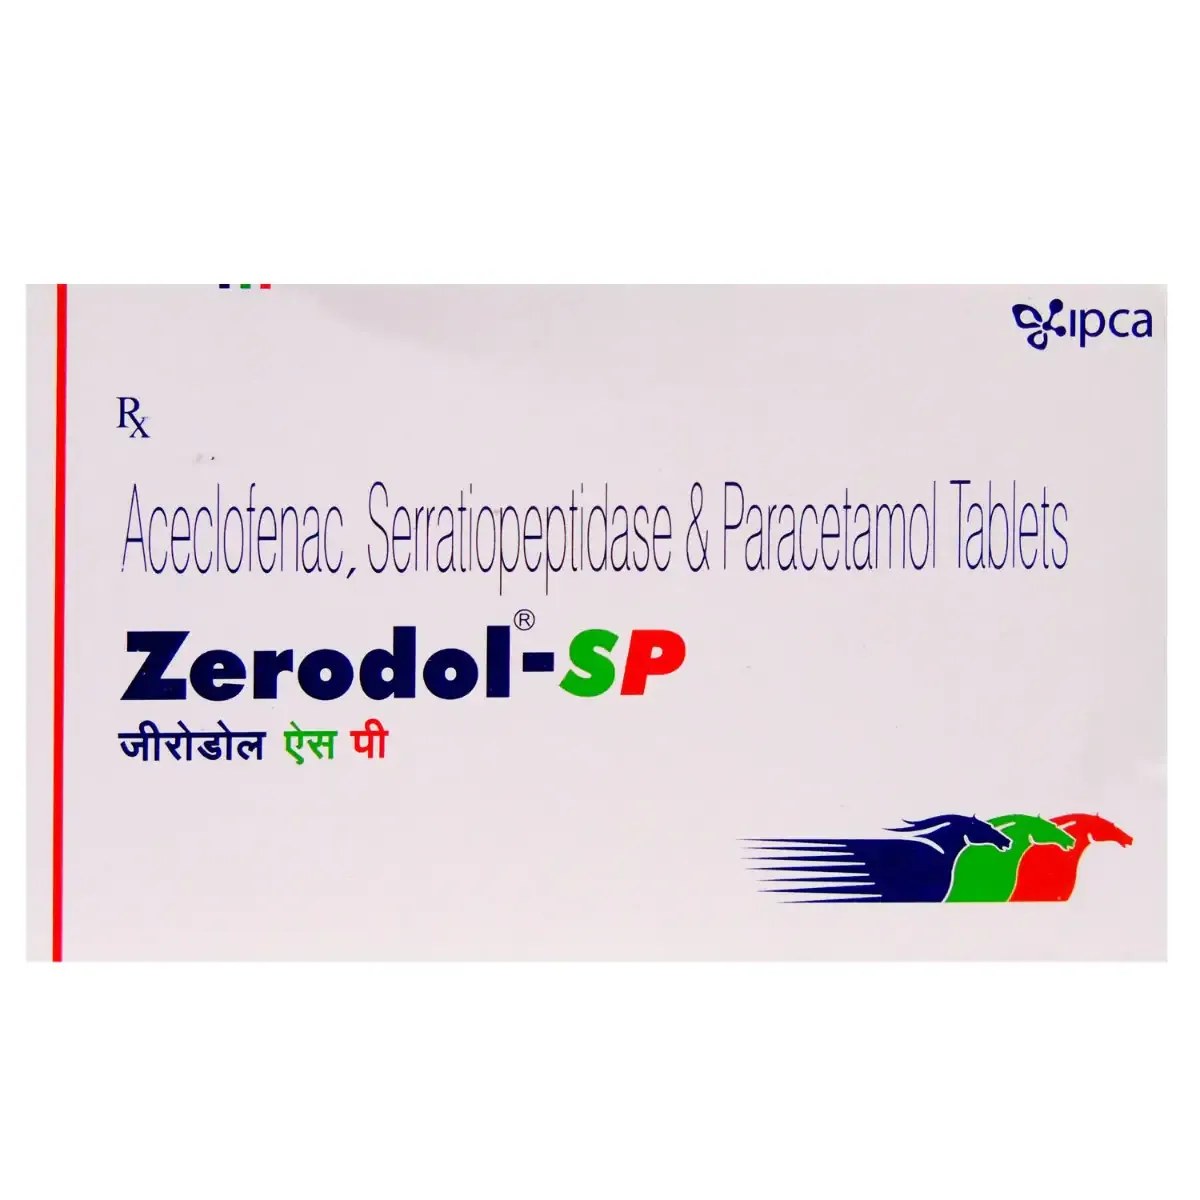 Zerodol SP Tablet Uses, Benefits, dosage, Side Effects, concerns